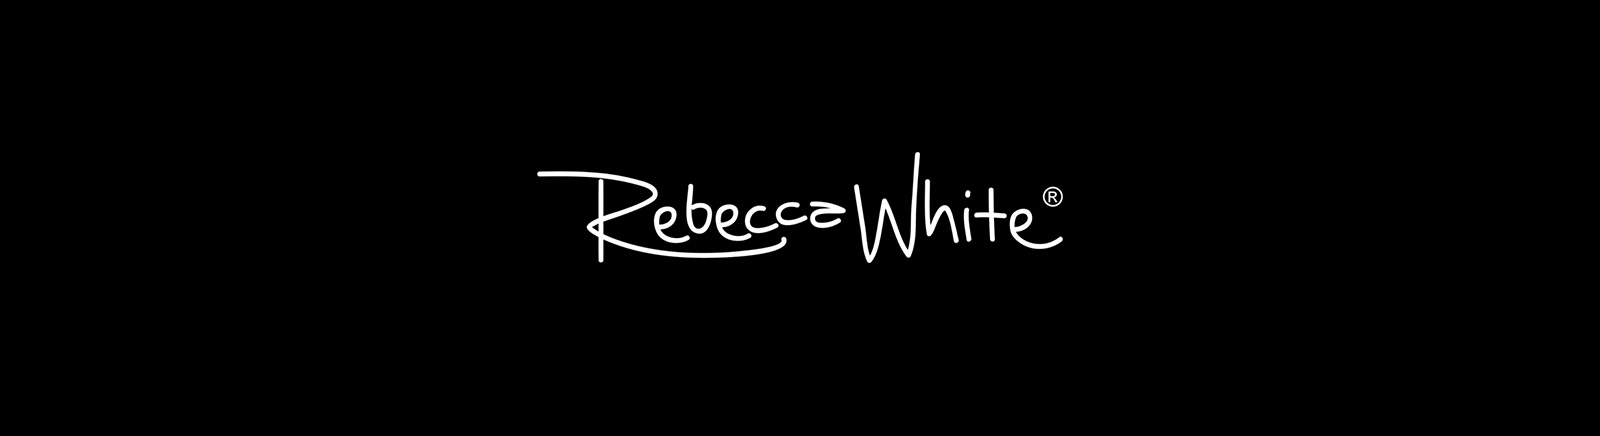 Juppen: Rebecca White Boots für Damen kaufen online shoppen